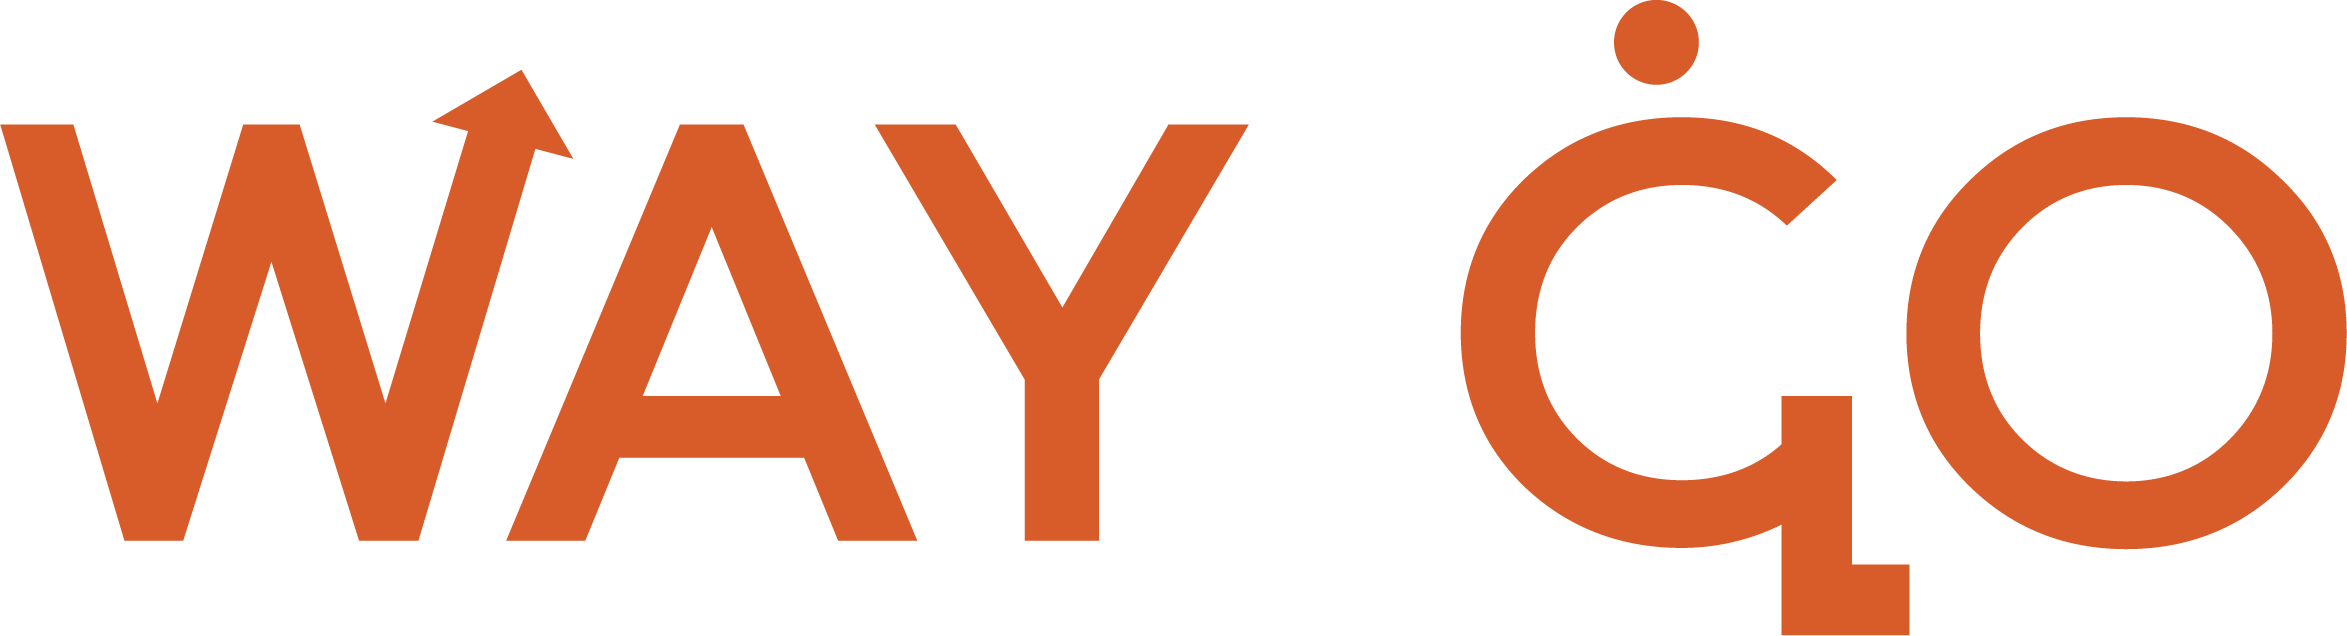 Logo du projet WAY GO créé par les partcipantes du Change Mak'Her